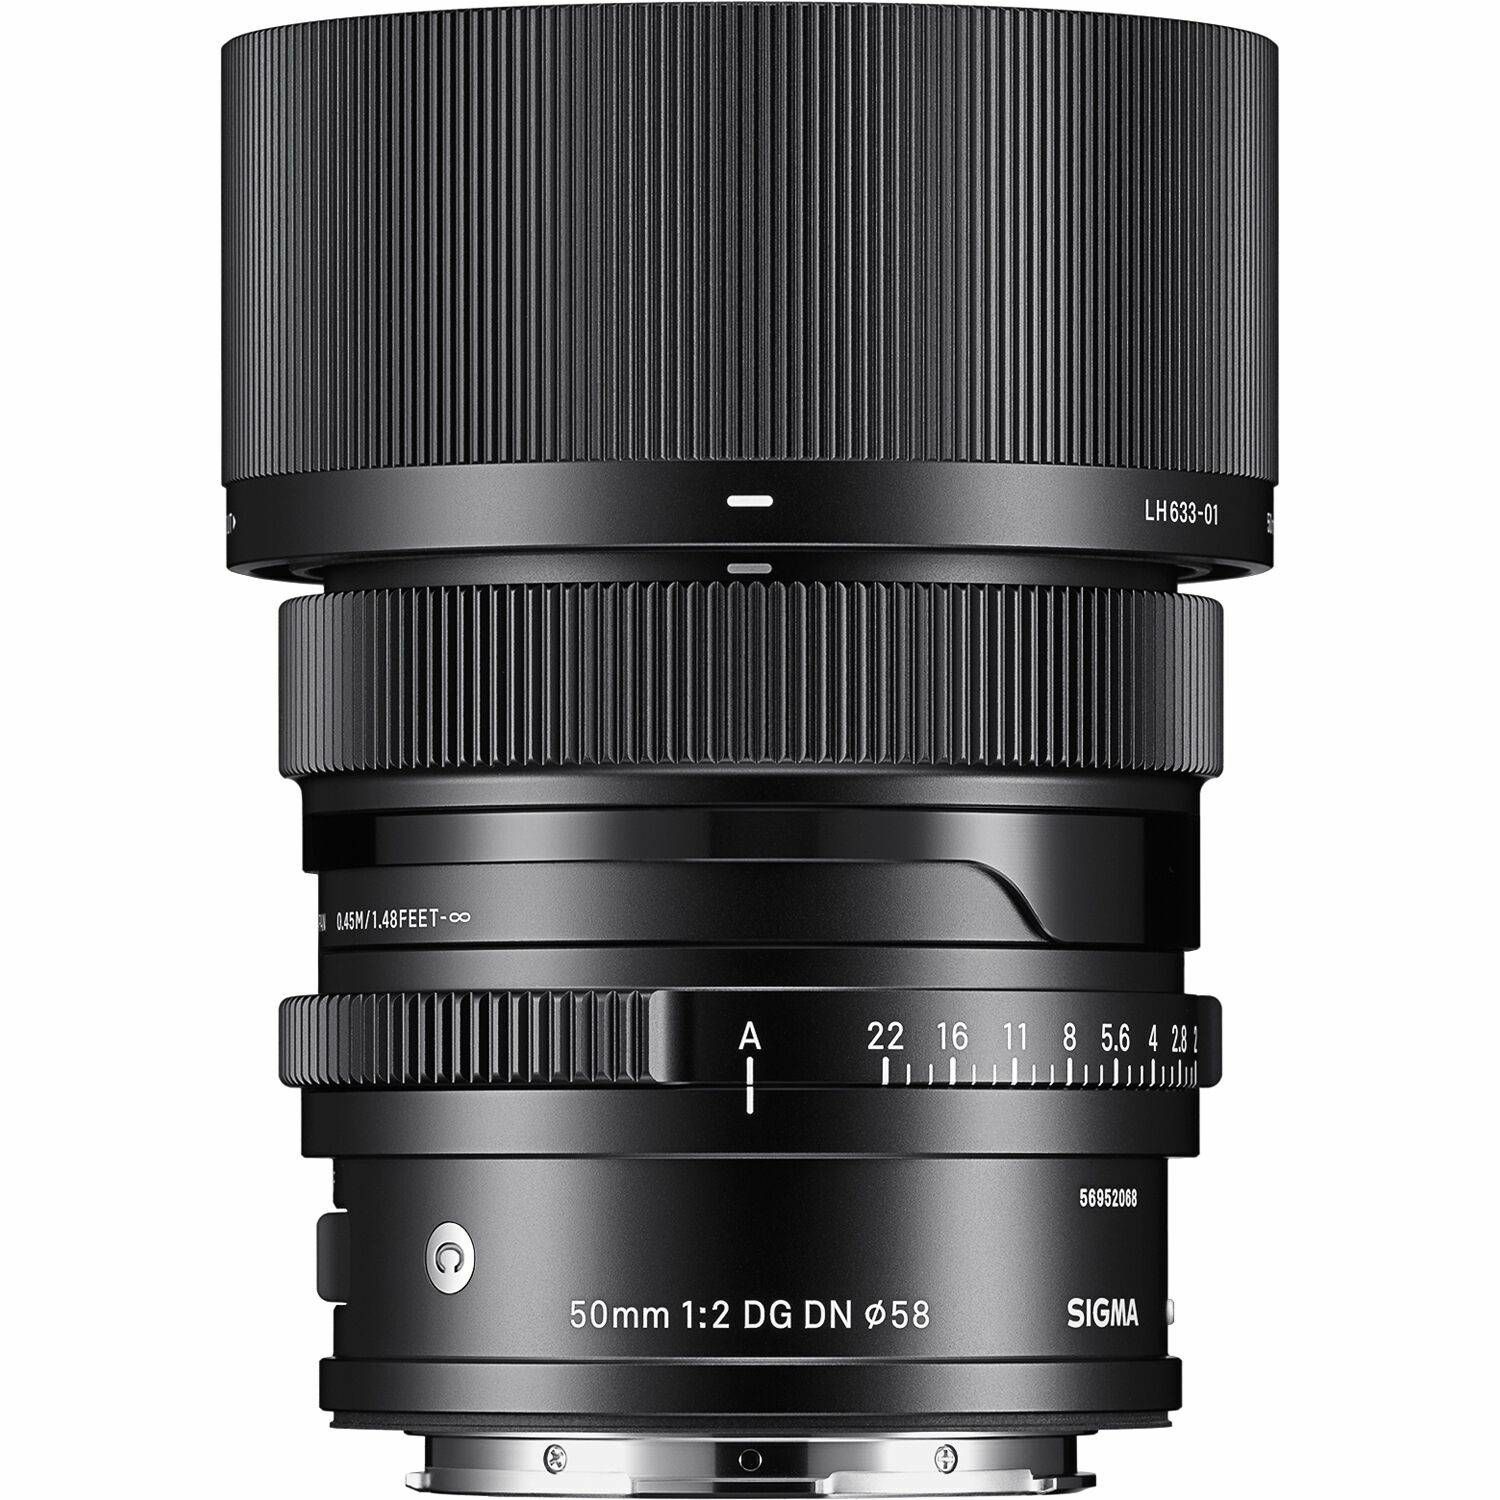 Sigma 50mm f/2 DG DN Contemporary objektiv za Sony E-mount